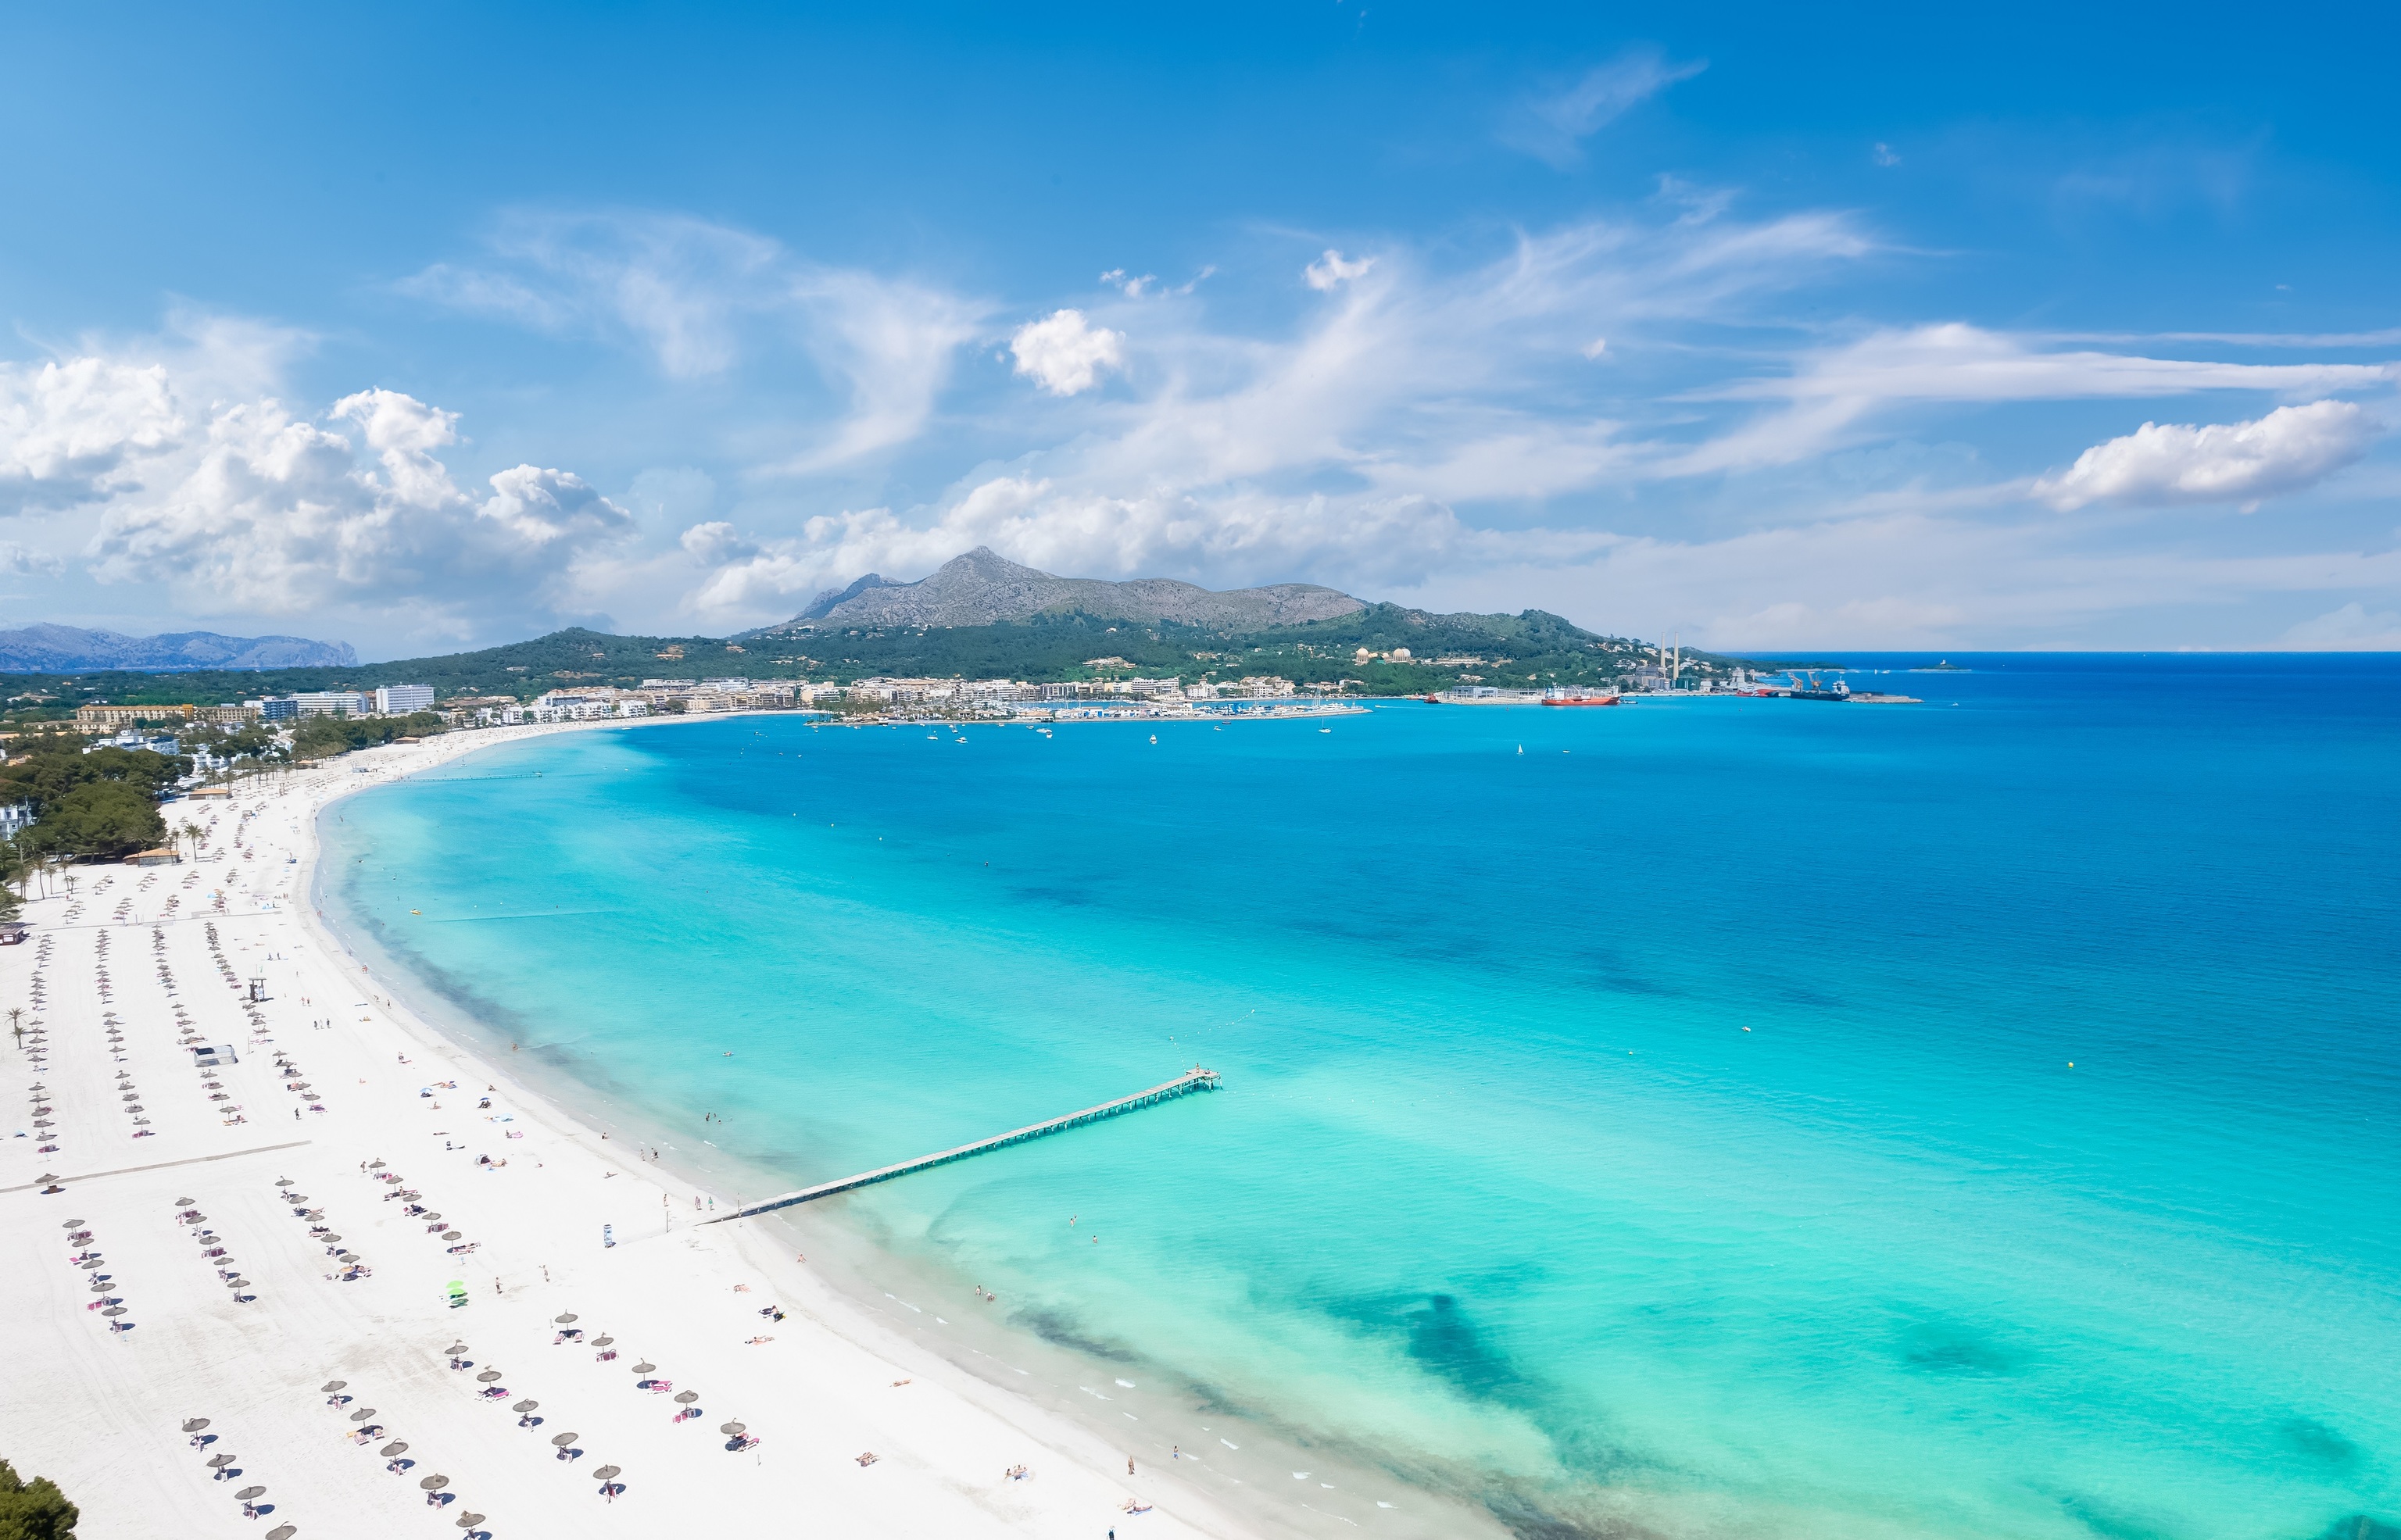 Playas de arena blanca: las 13 más bonitas del mundo